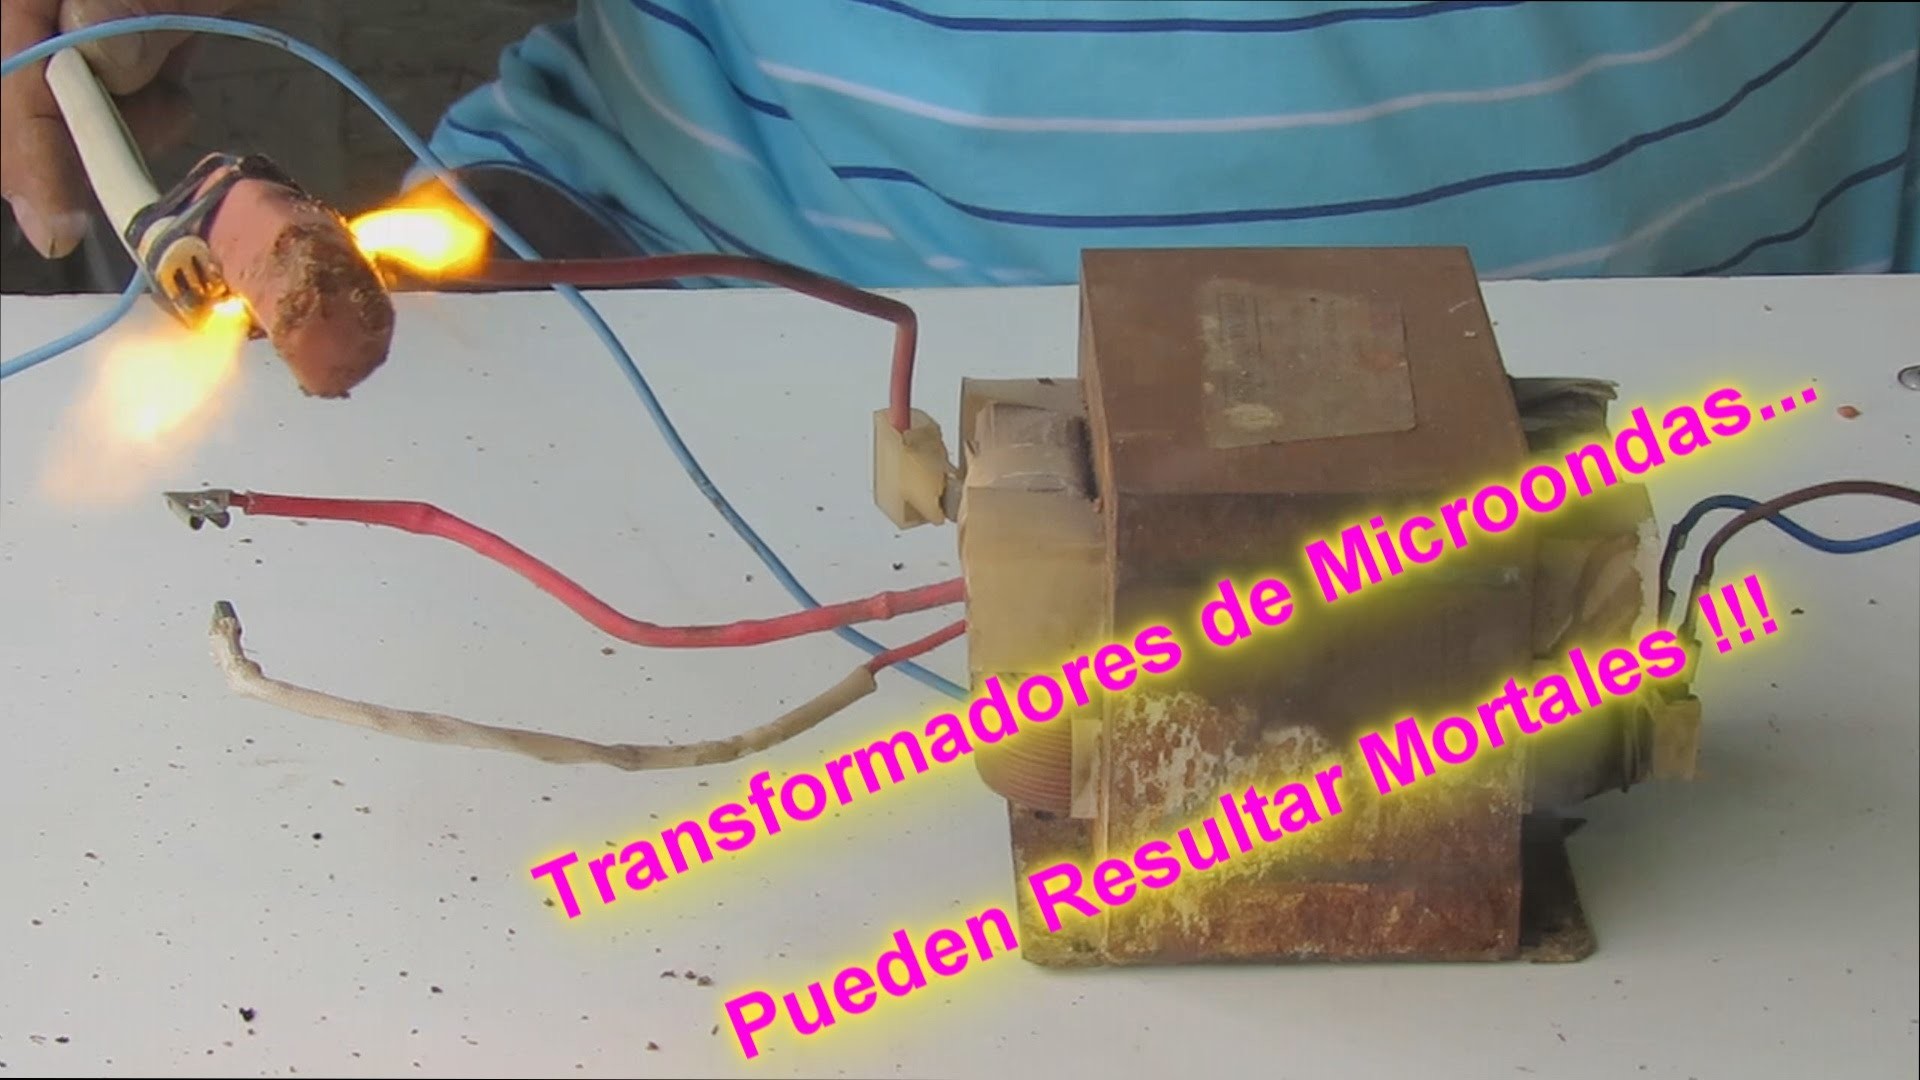 Transformador de Microondas: Una Trampa Mortal. Microwave transformer: A Death Trap